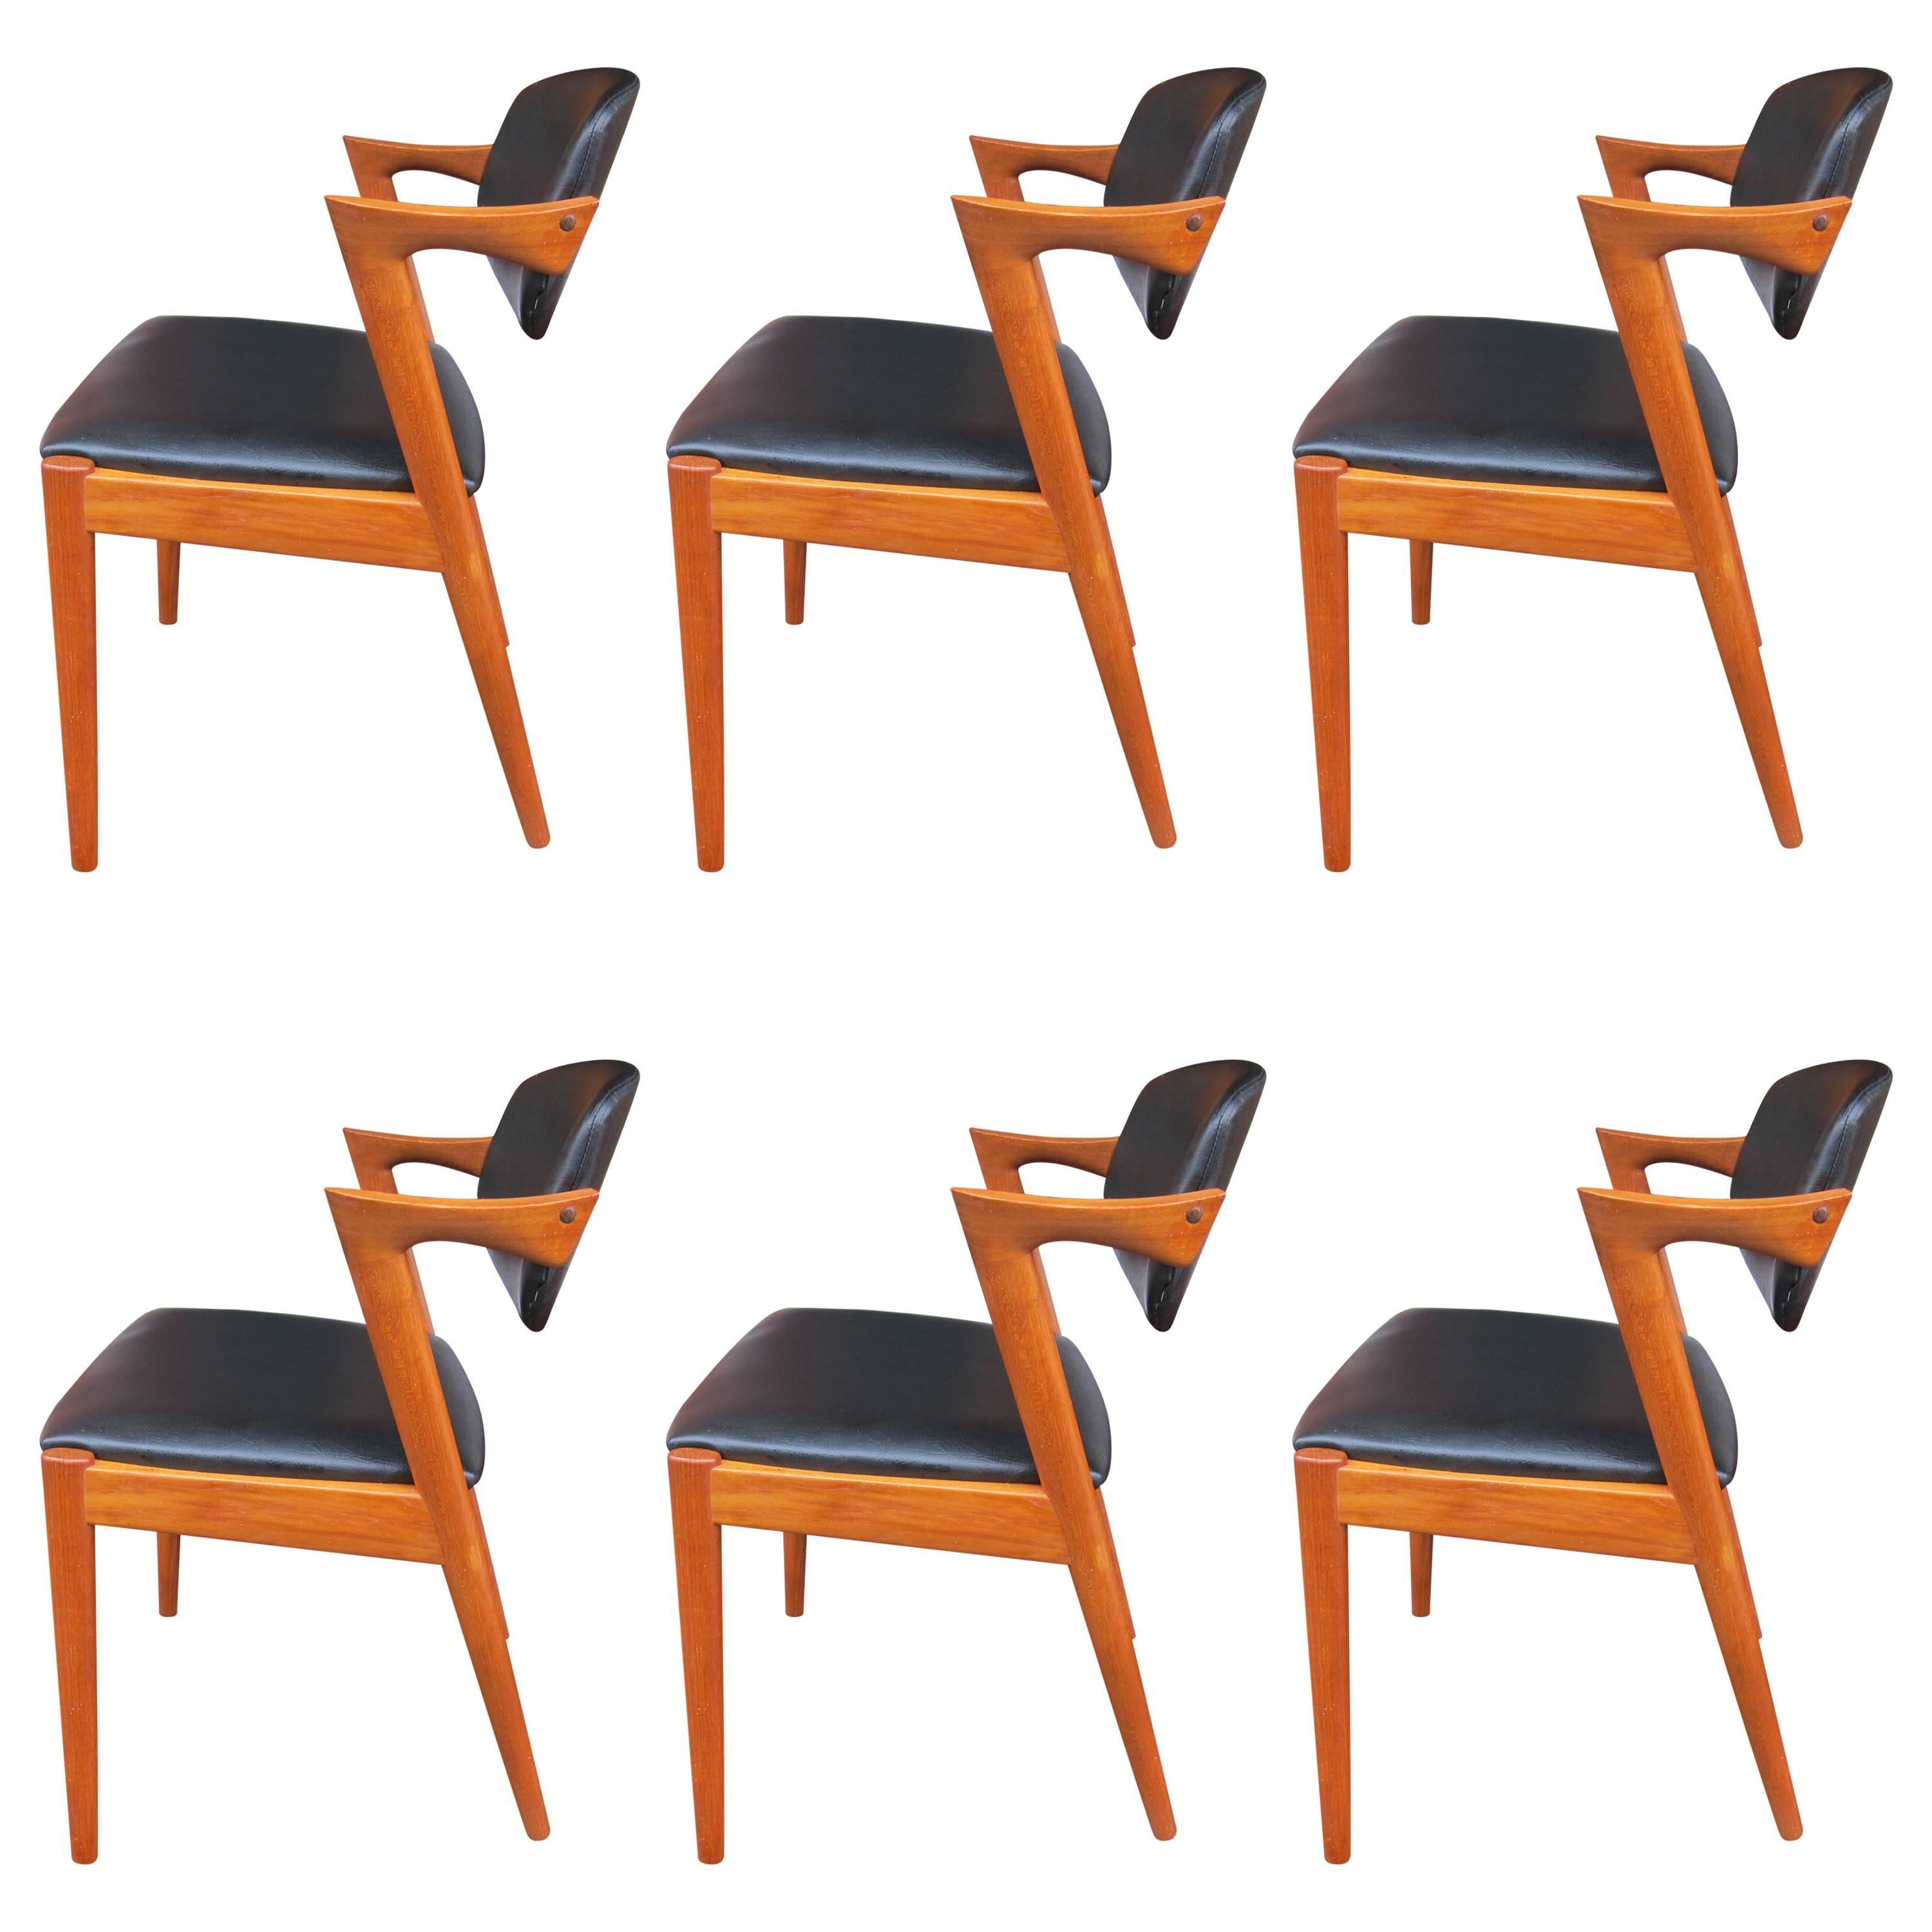 12 Kai Kristiansen Chairs model 42 in Teak CUSTOM UPHOLSTERY AVAILABLE For Sale